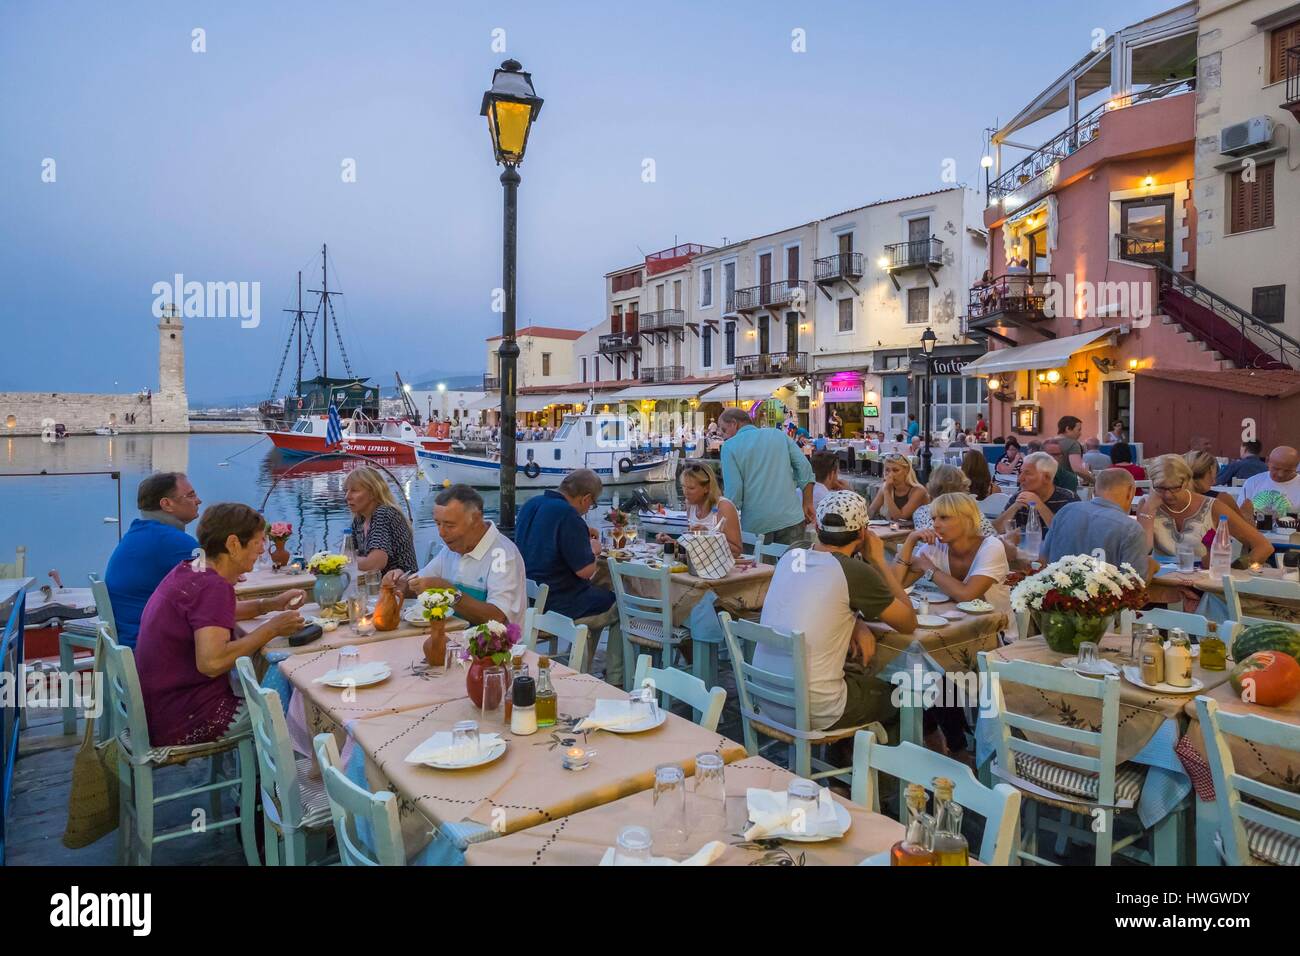 La Grecia, Creta, Rethymnon, città vecchia, terrazza di ristoranti nel vecchio porto veneziano del XV secolo veneziano del faro in background Foto Stock